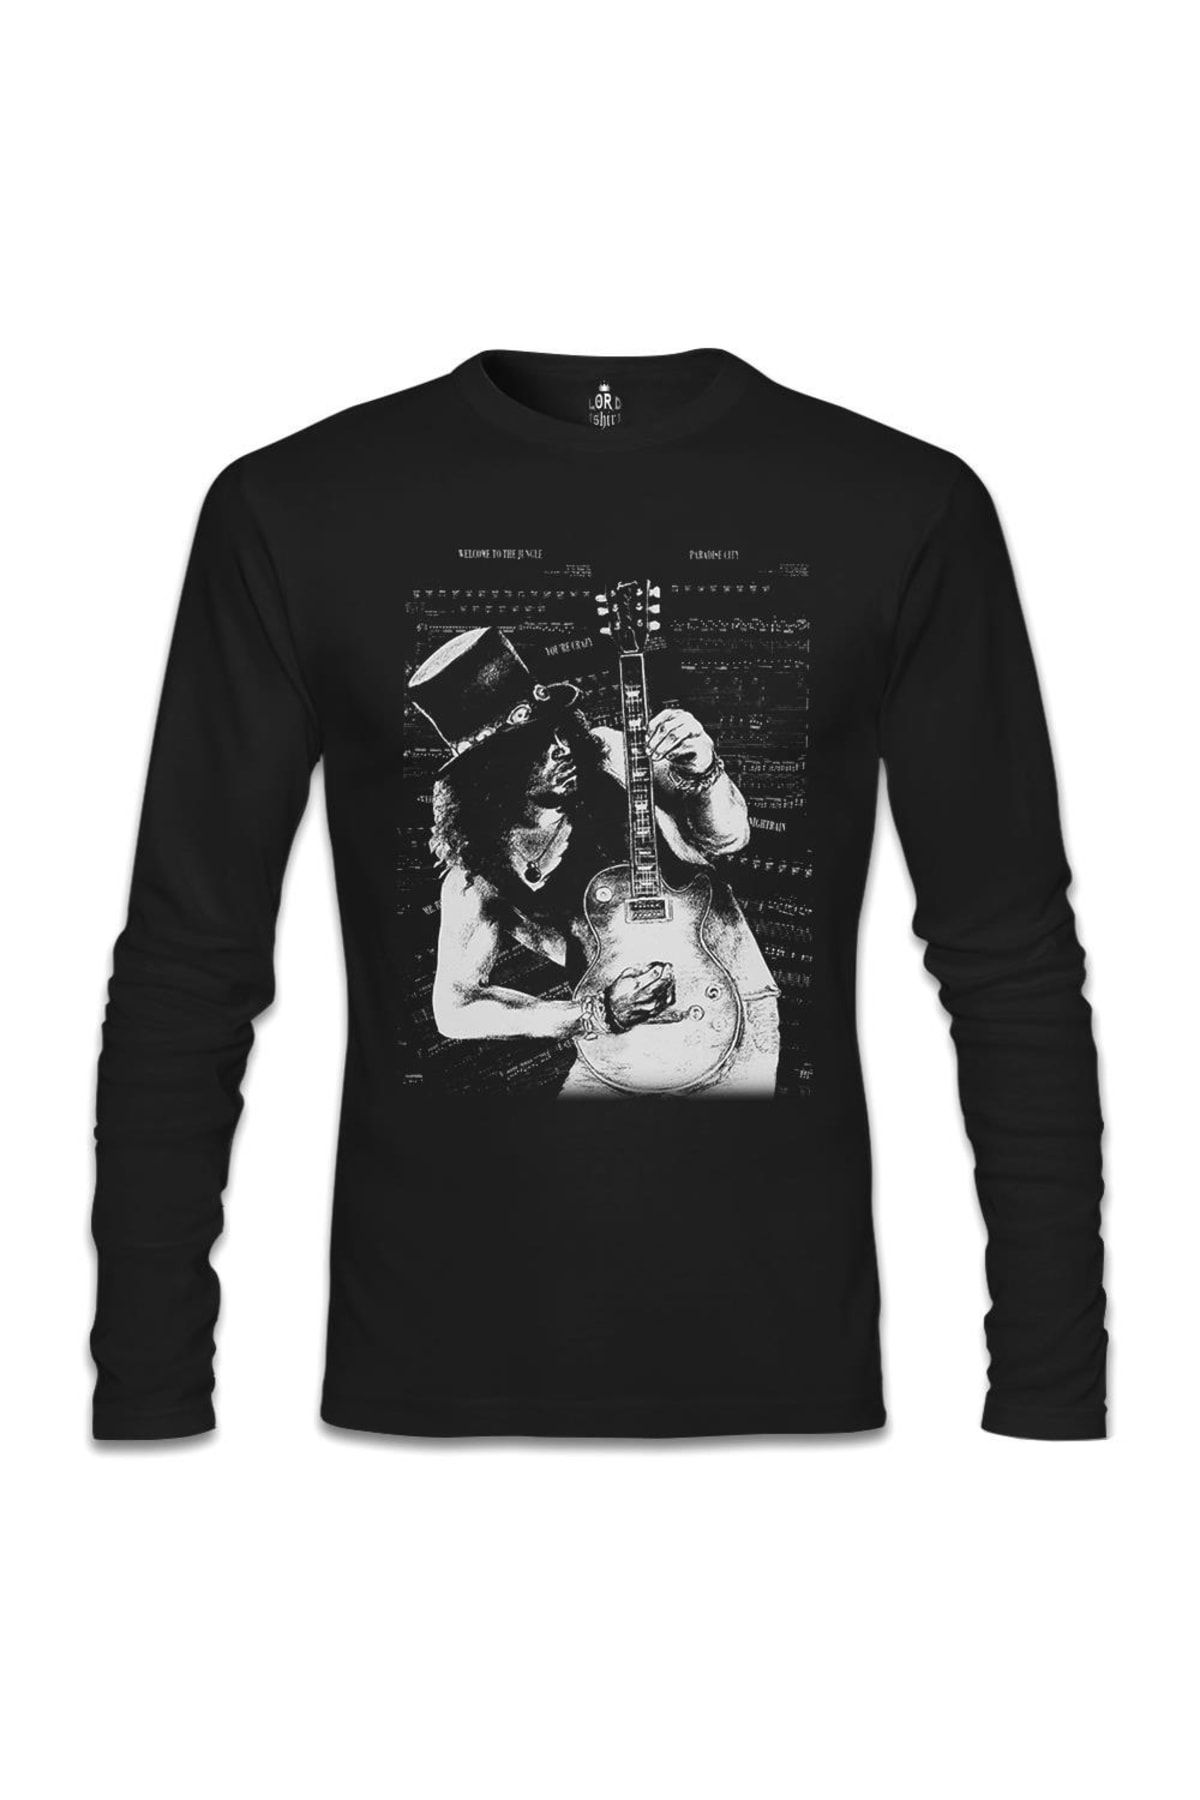 Lord T-Shirt Slash - Guitar Siyah Sweatshirt